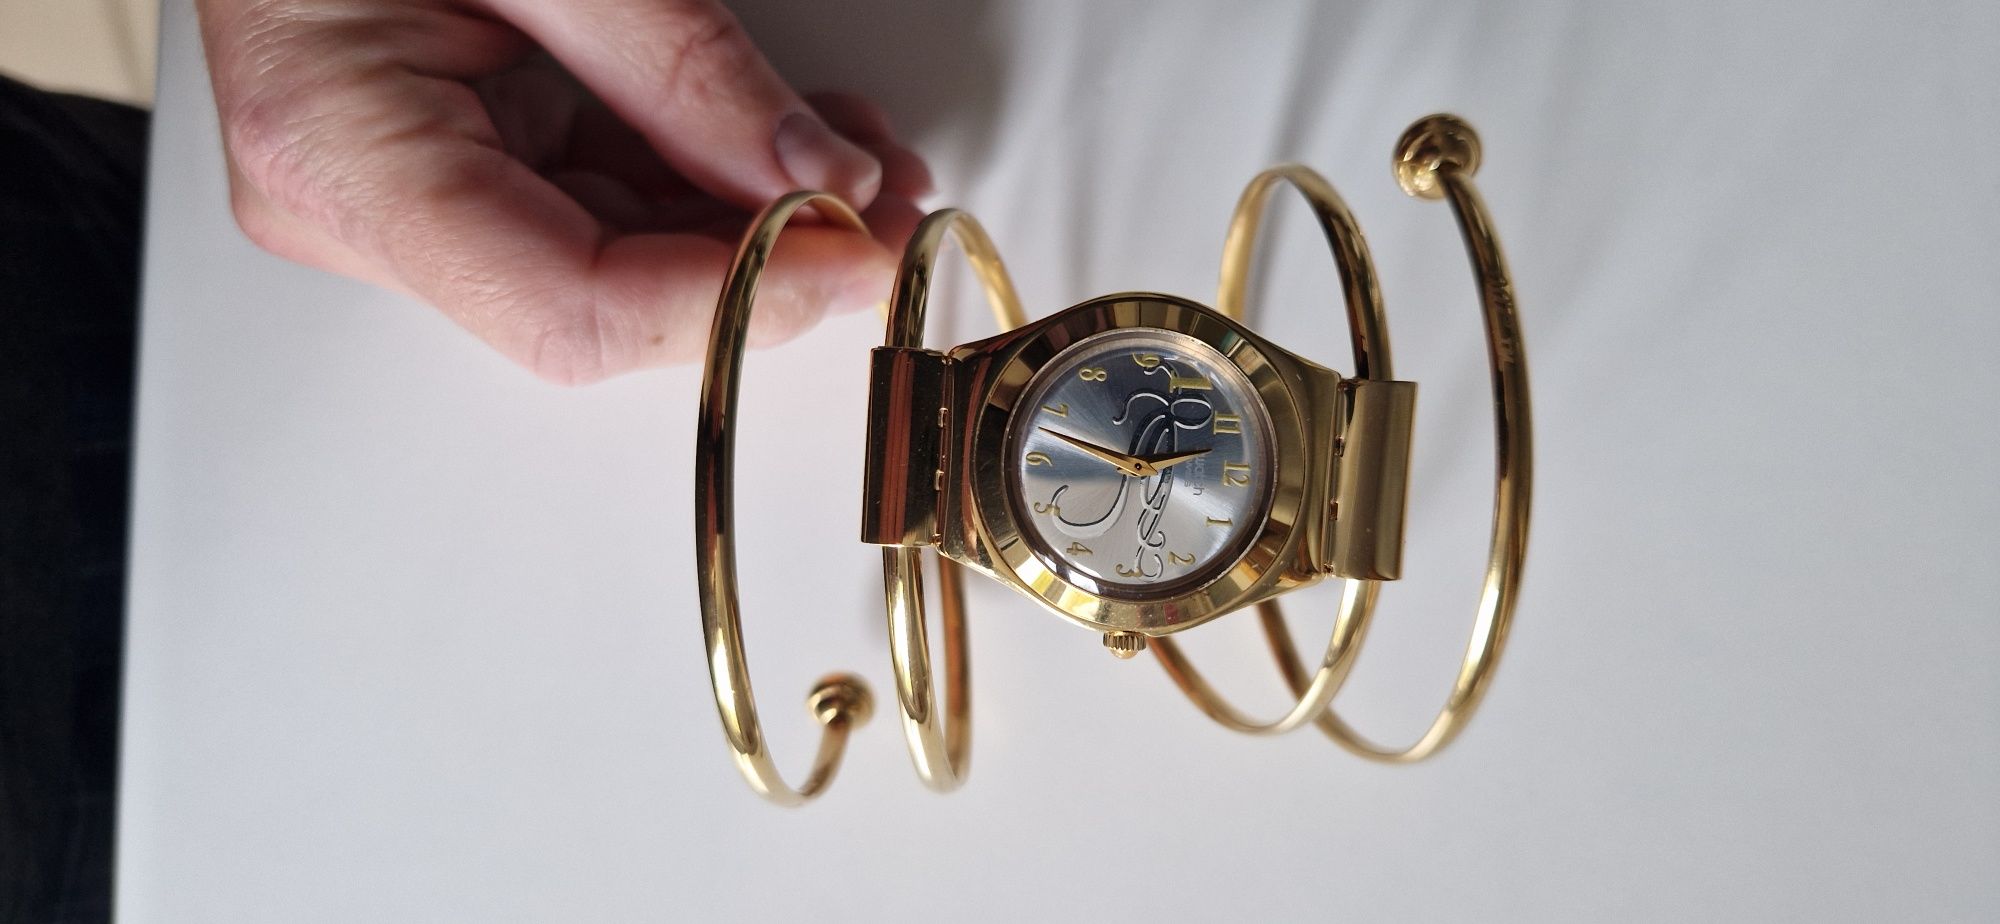 Sprzedam unikatowy zegarek Swatch James Bond 007 limited edition